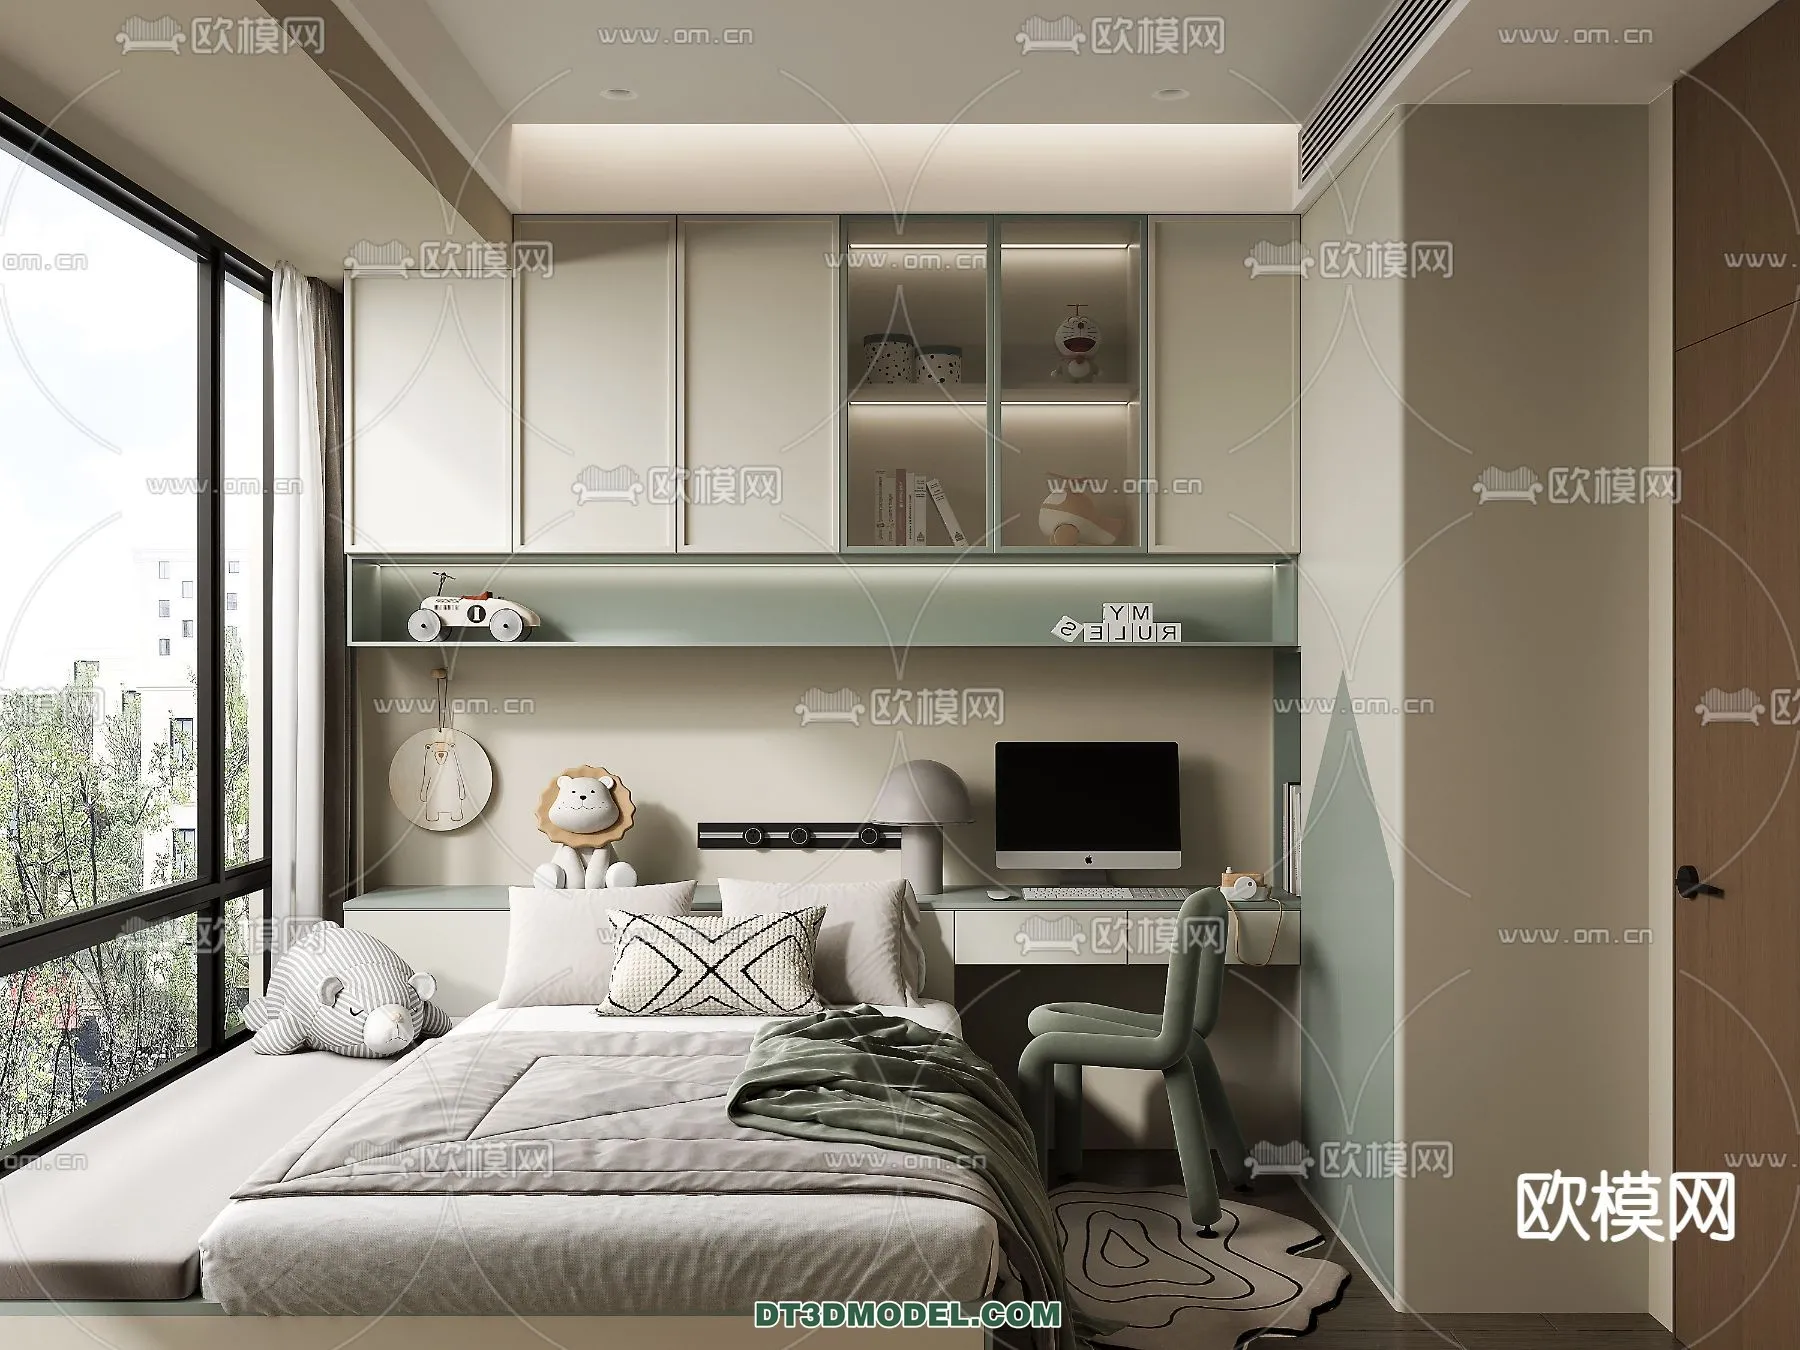 Tatami Bedroom – Japan Bedroom – 3D Scene – 020